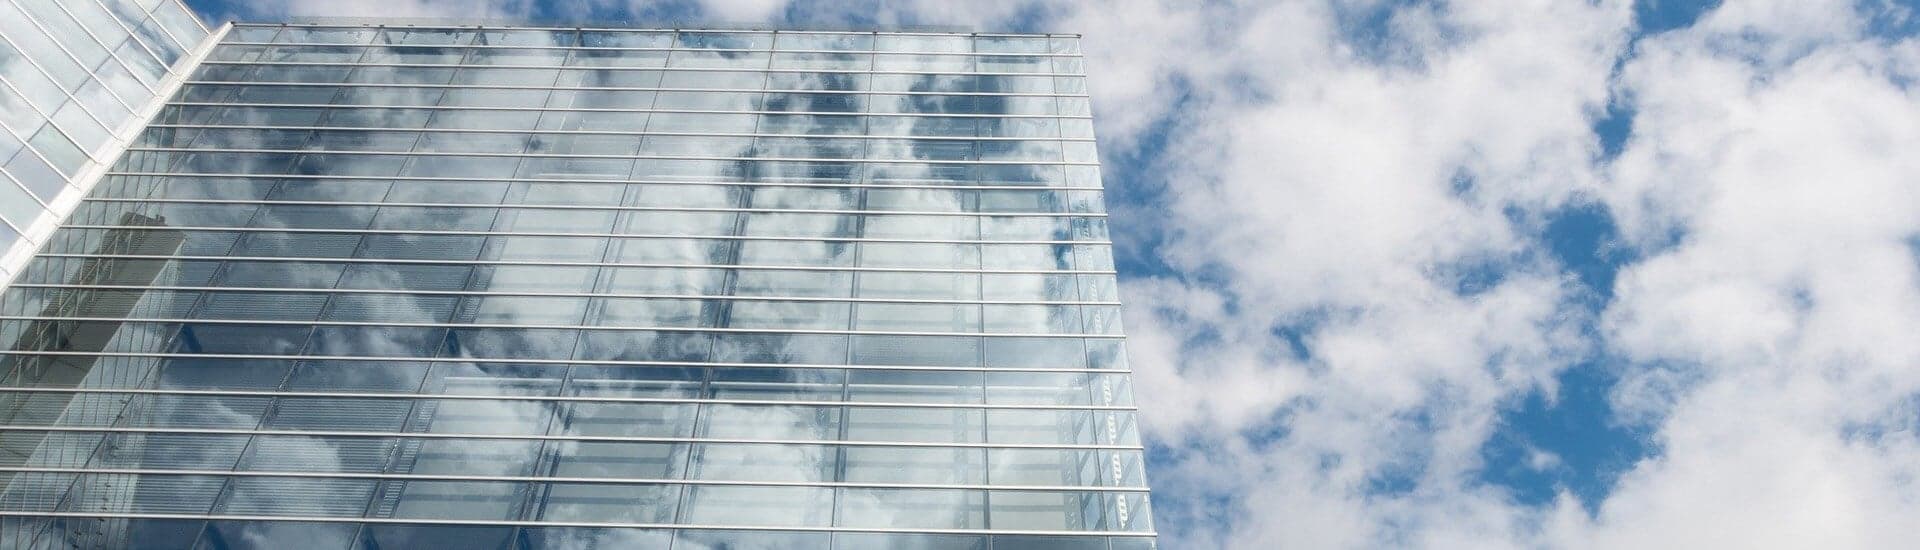 eine gläserne Hochhausfassade, schräg von unten fotografiert, die Wolken spiegeln sich darin